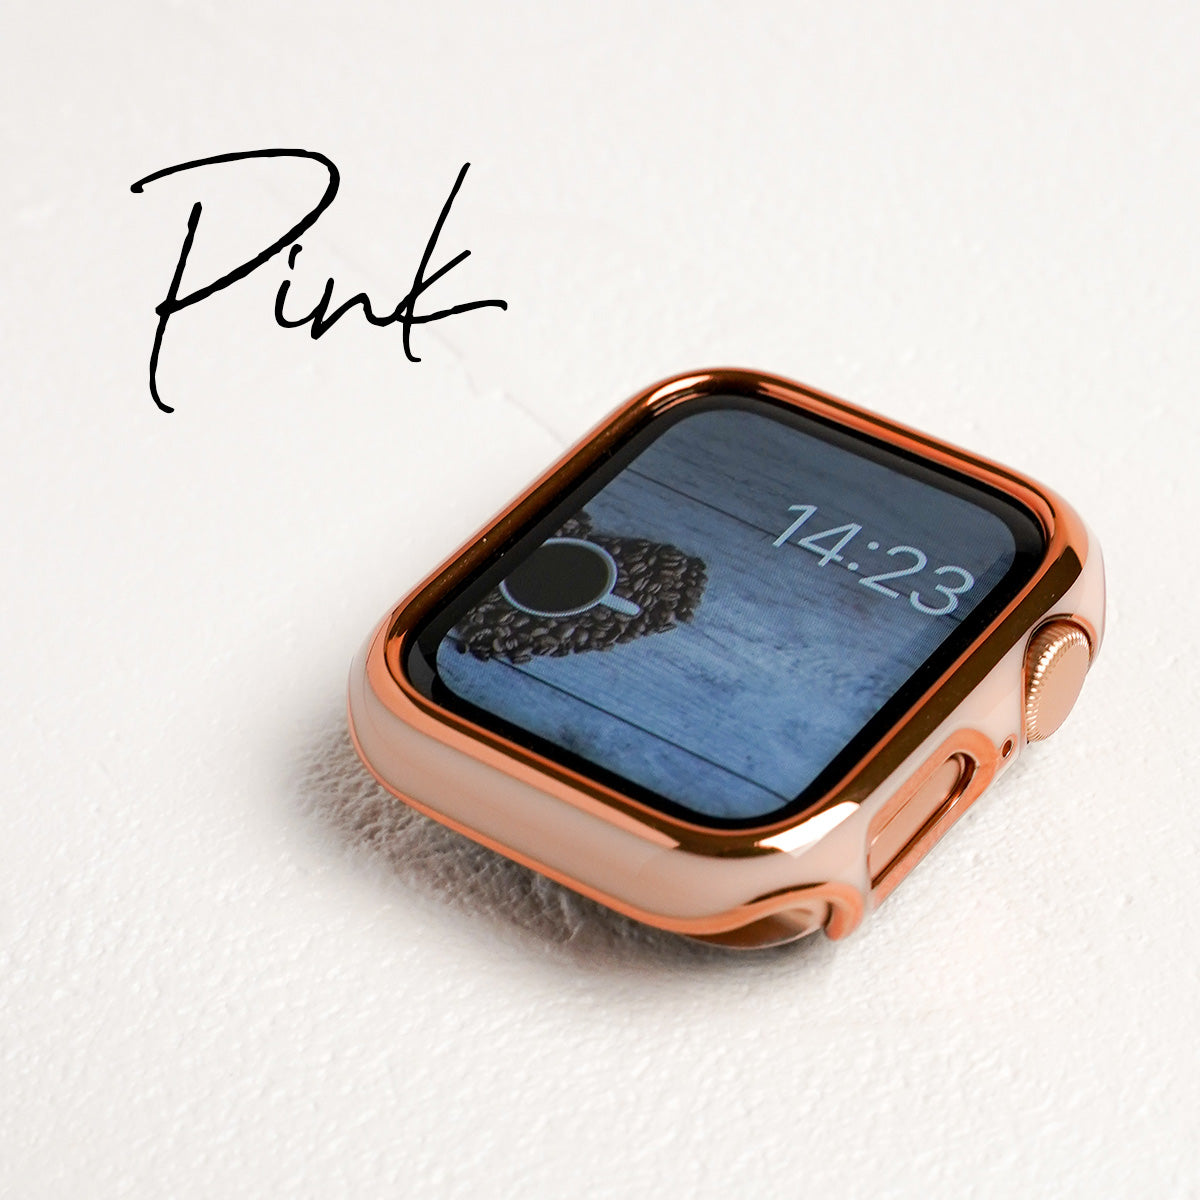 ローズゴールドライン 保護フレーム ハードタイプ アップルウォッチカバー Apple Watch